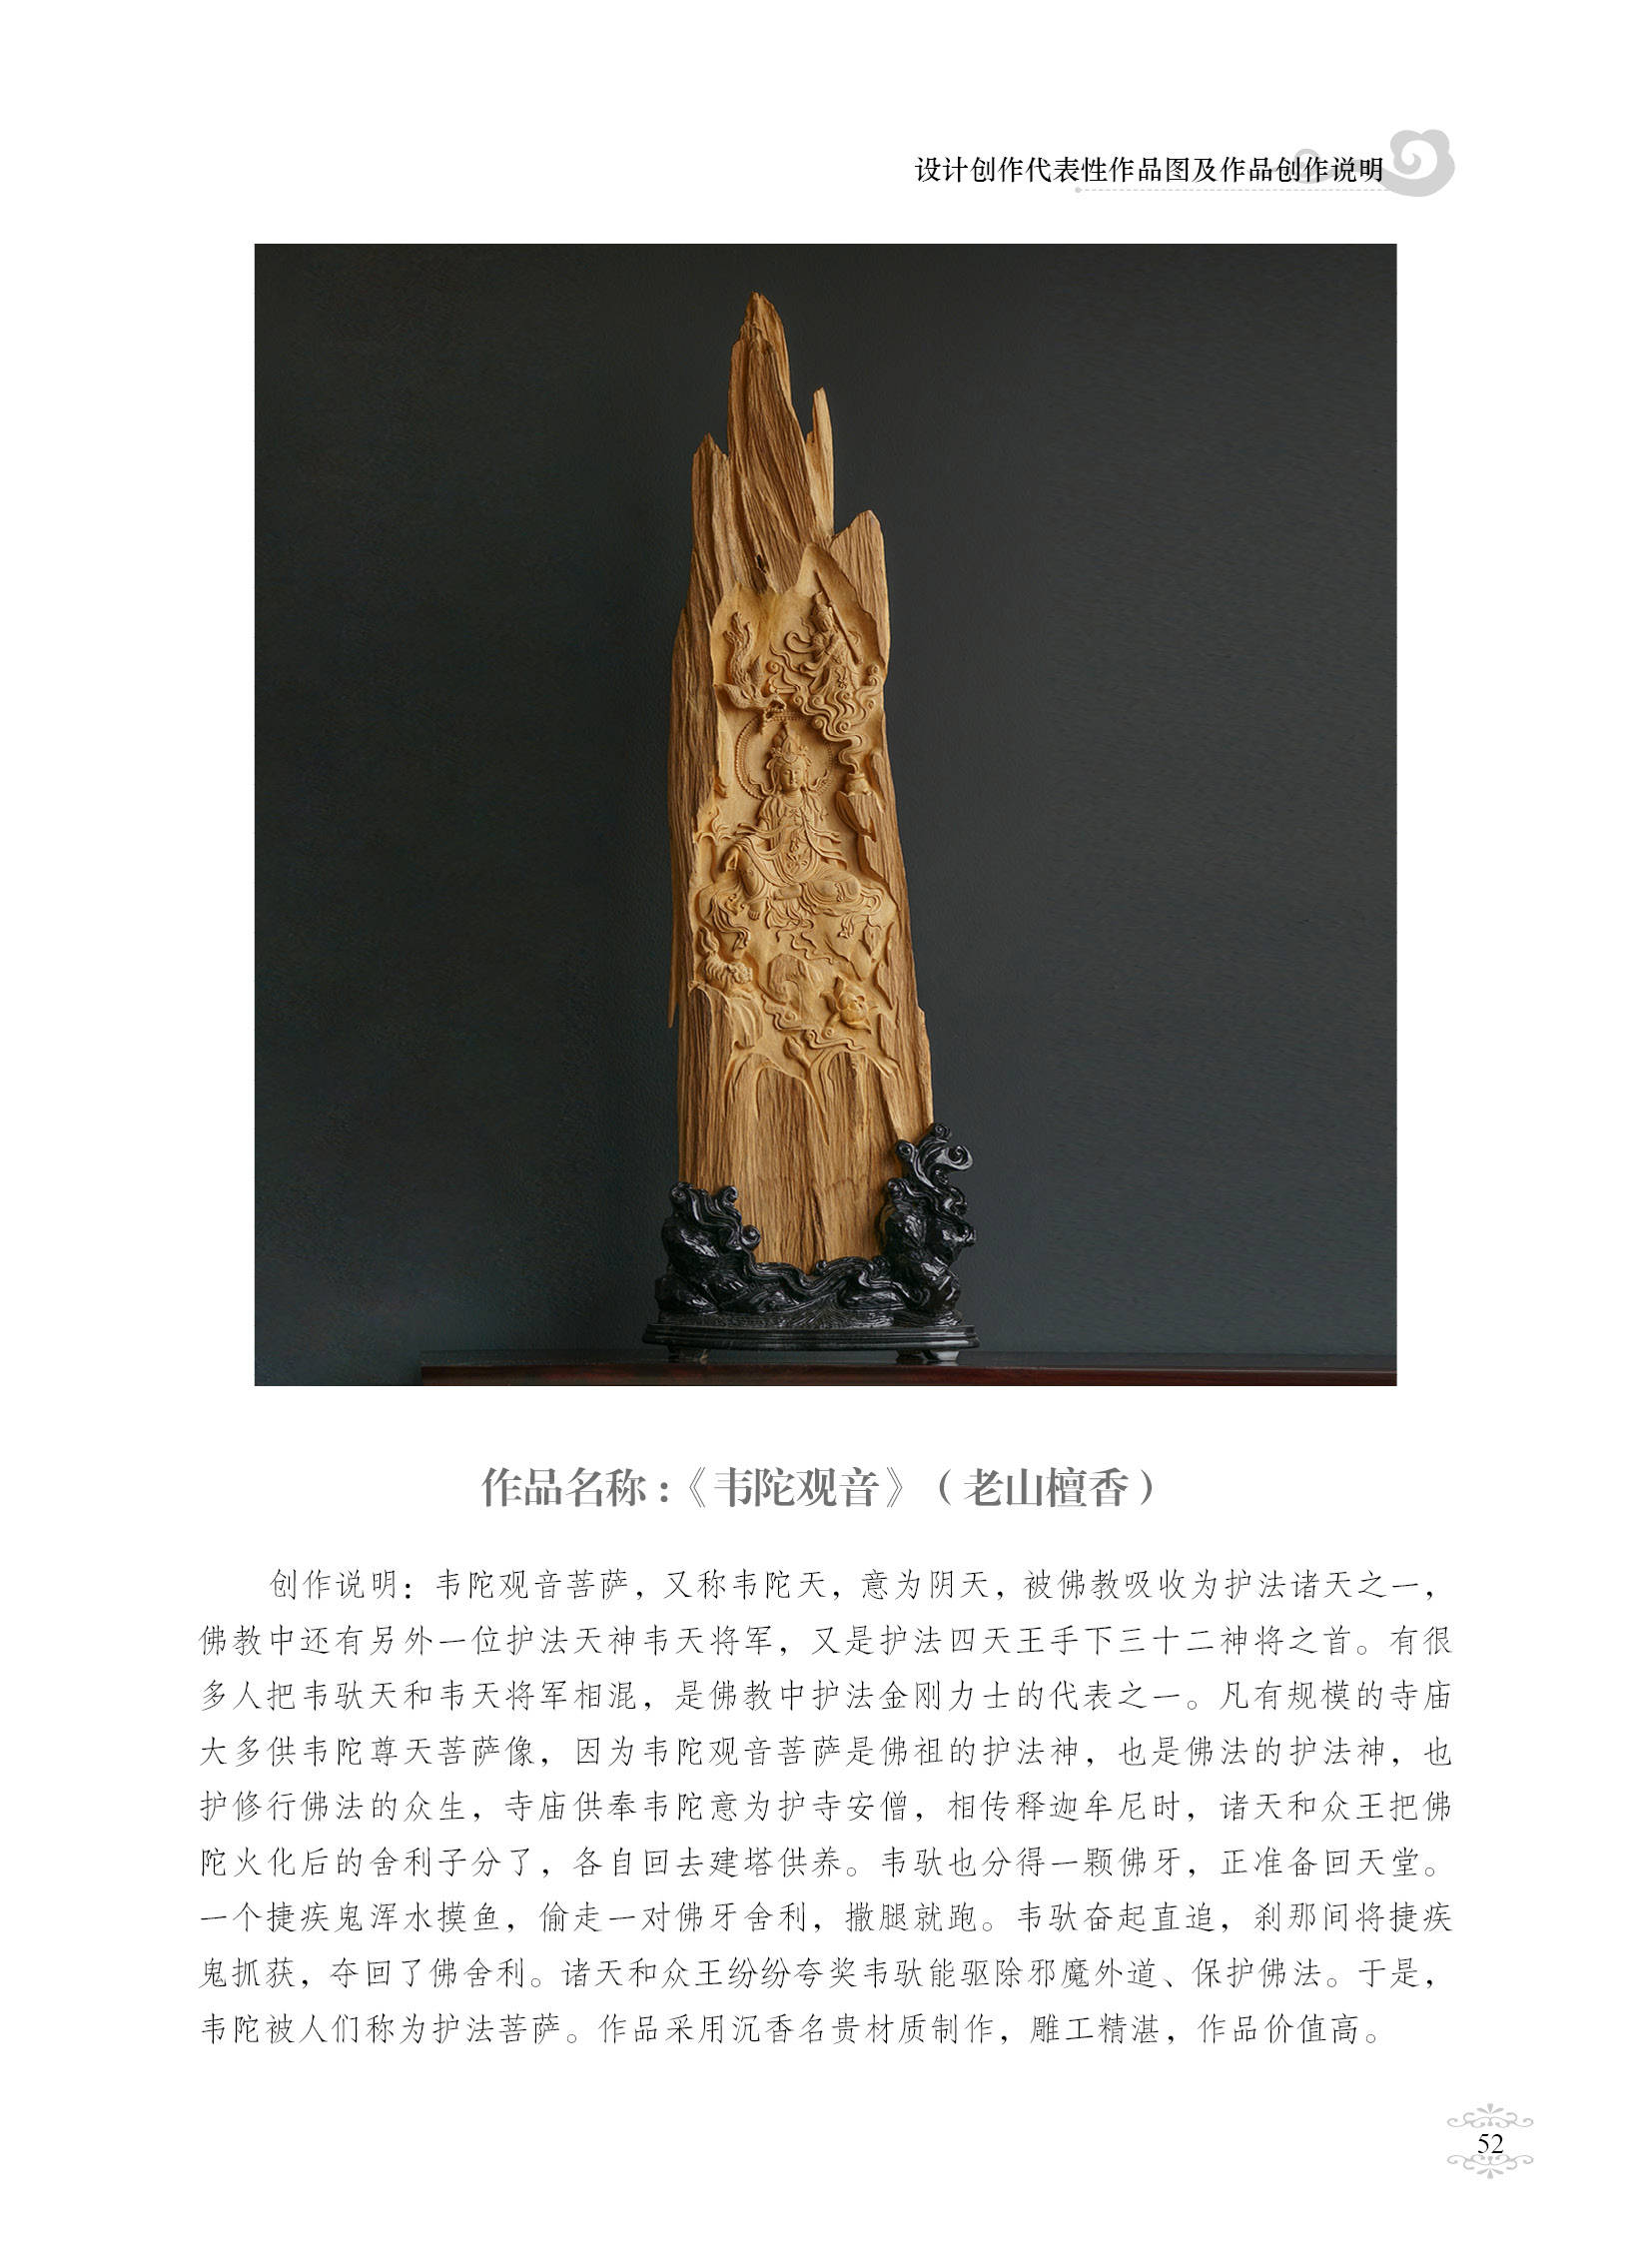 中国雕刻艺术鉴赏论文图片